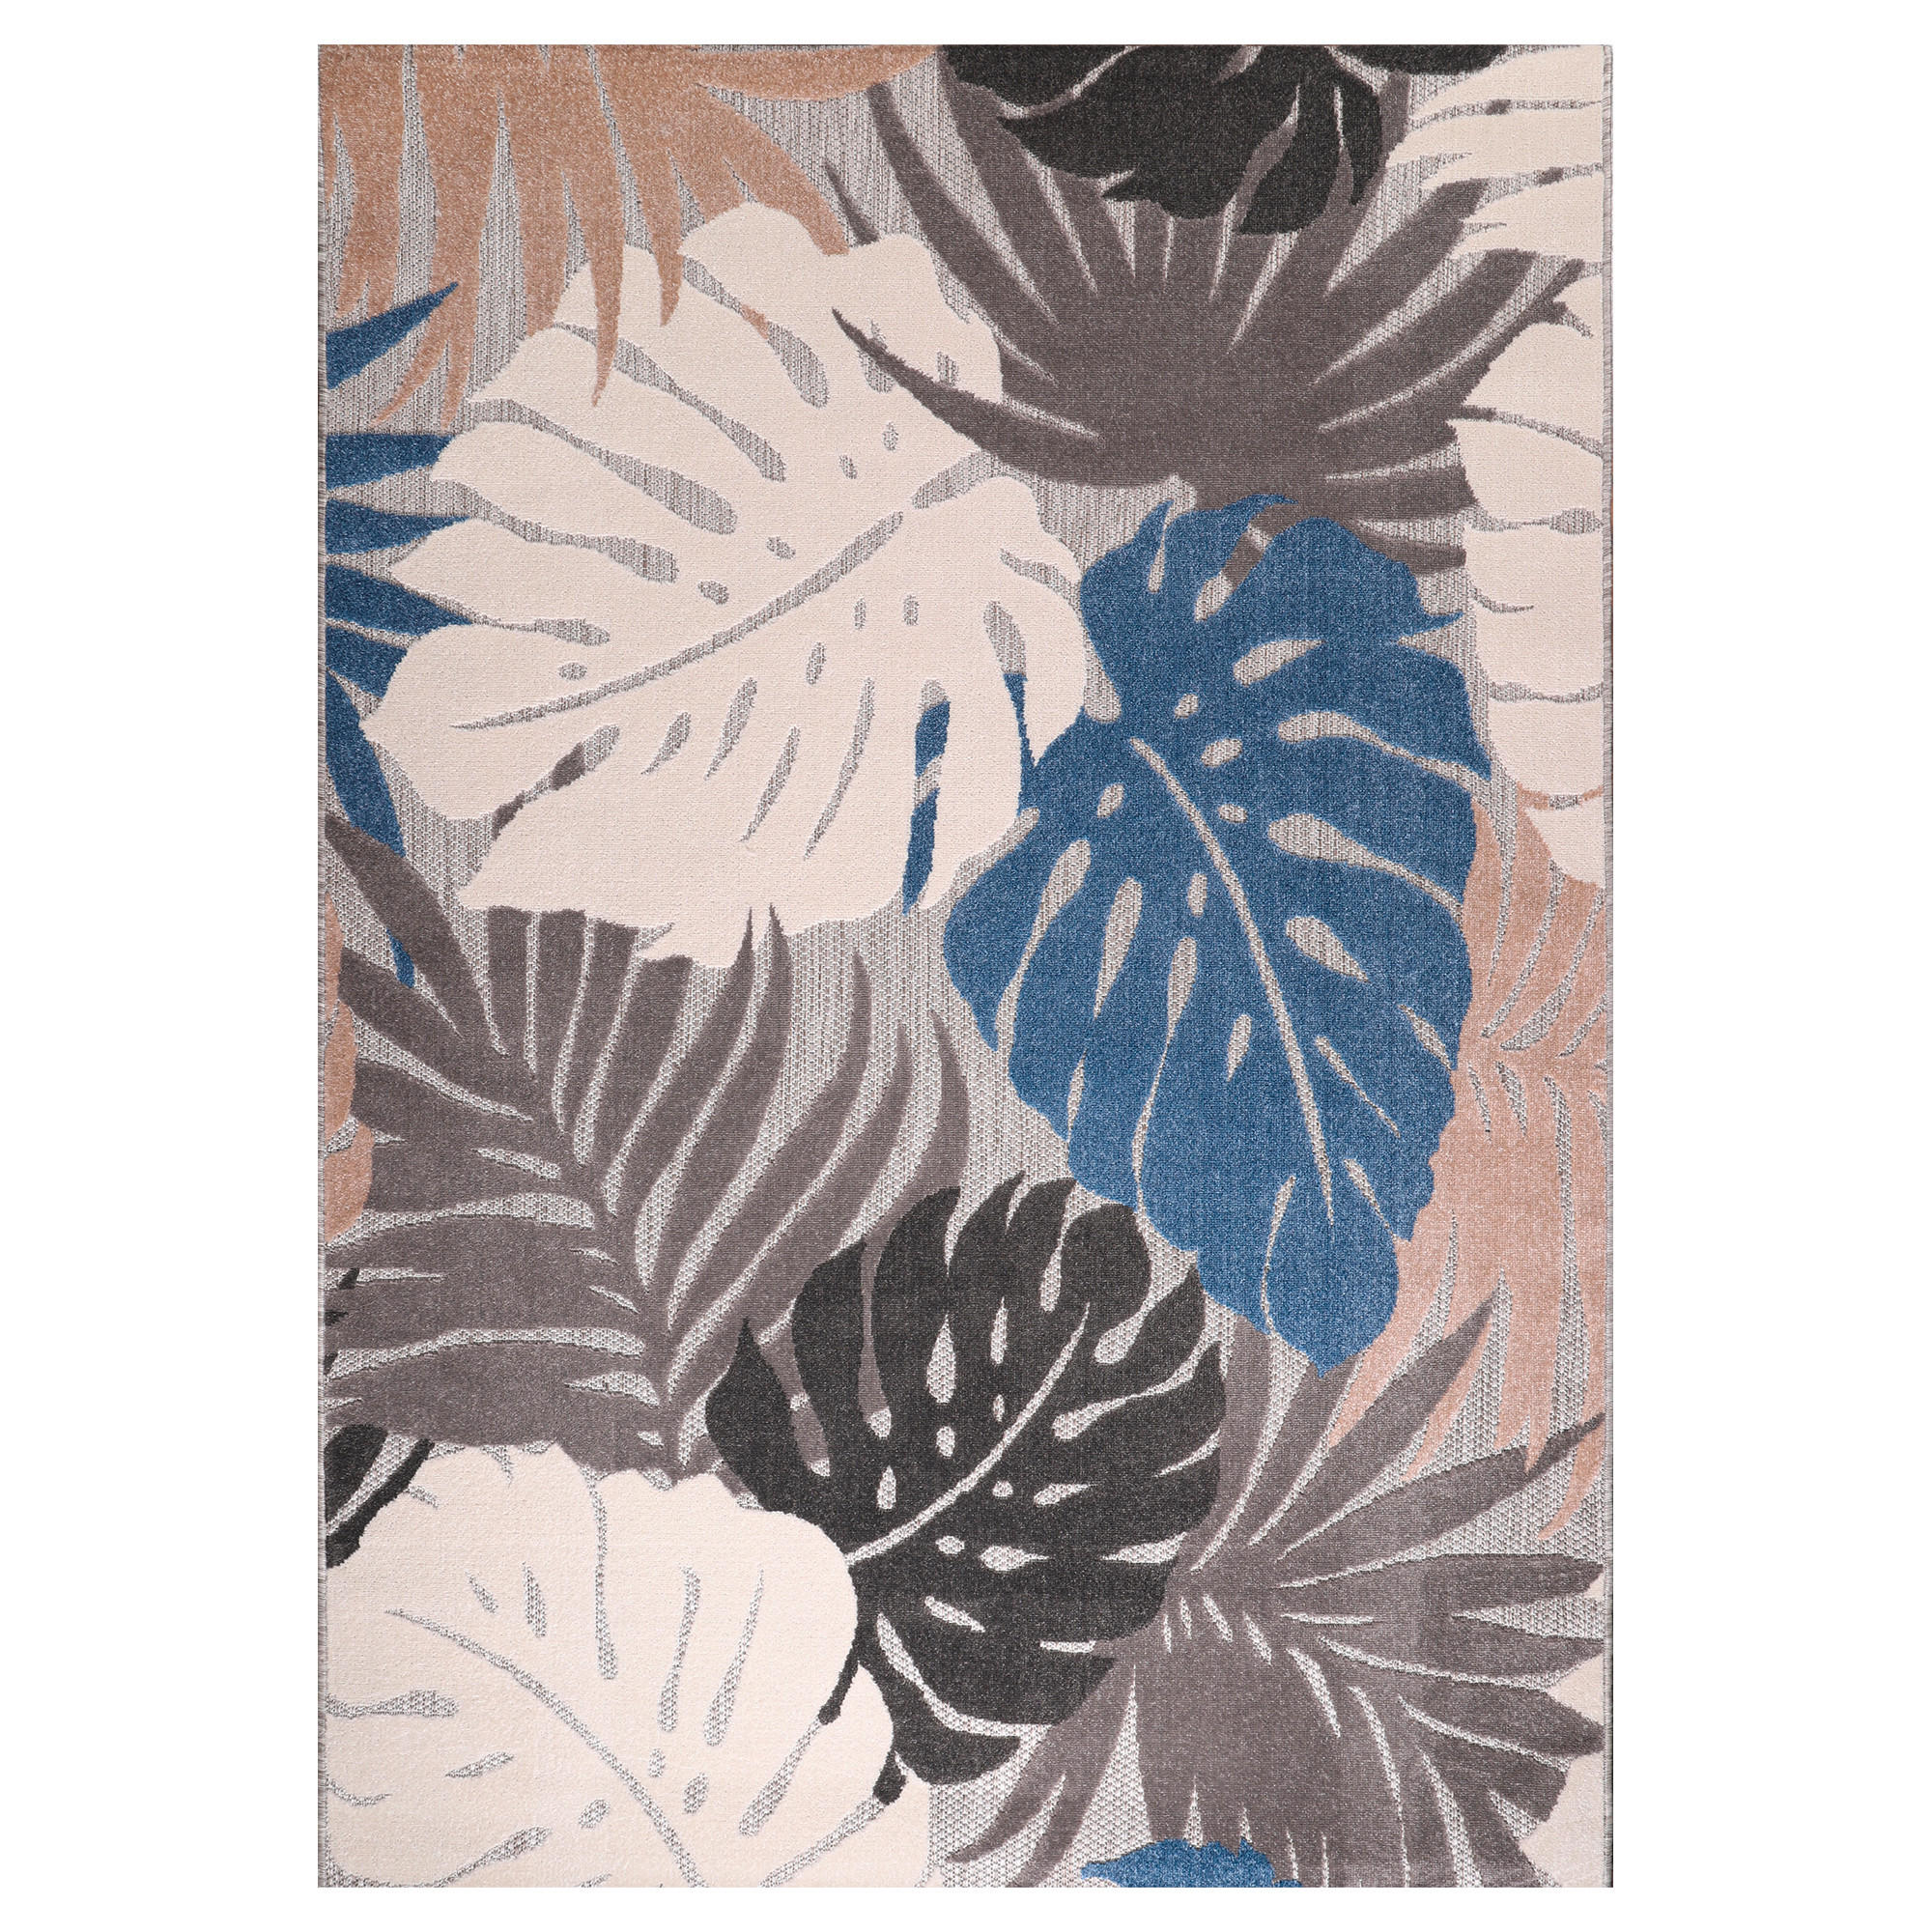 OUTDOORTEPPICH 60/110 cm Floral  - Blau, LIFESTYLE, Kunststoff/Textil (60/110cm) - Novel